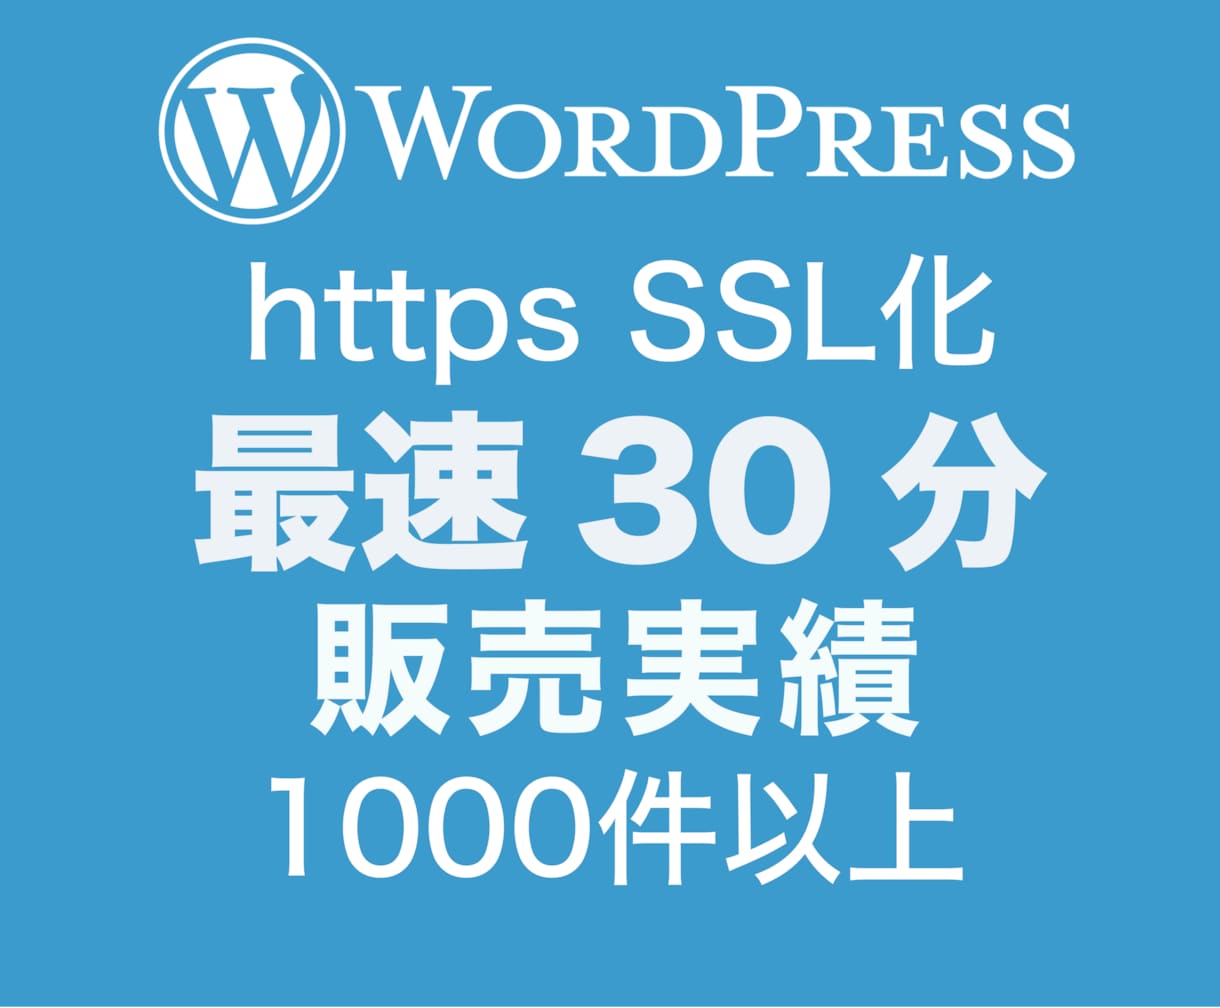 💬ココナラ｜常時SSL化・プラグイン無での作業を行います   Sakura Labs  
                5.0
           …